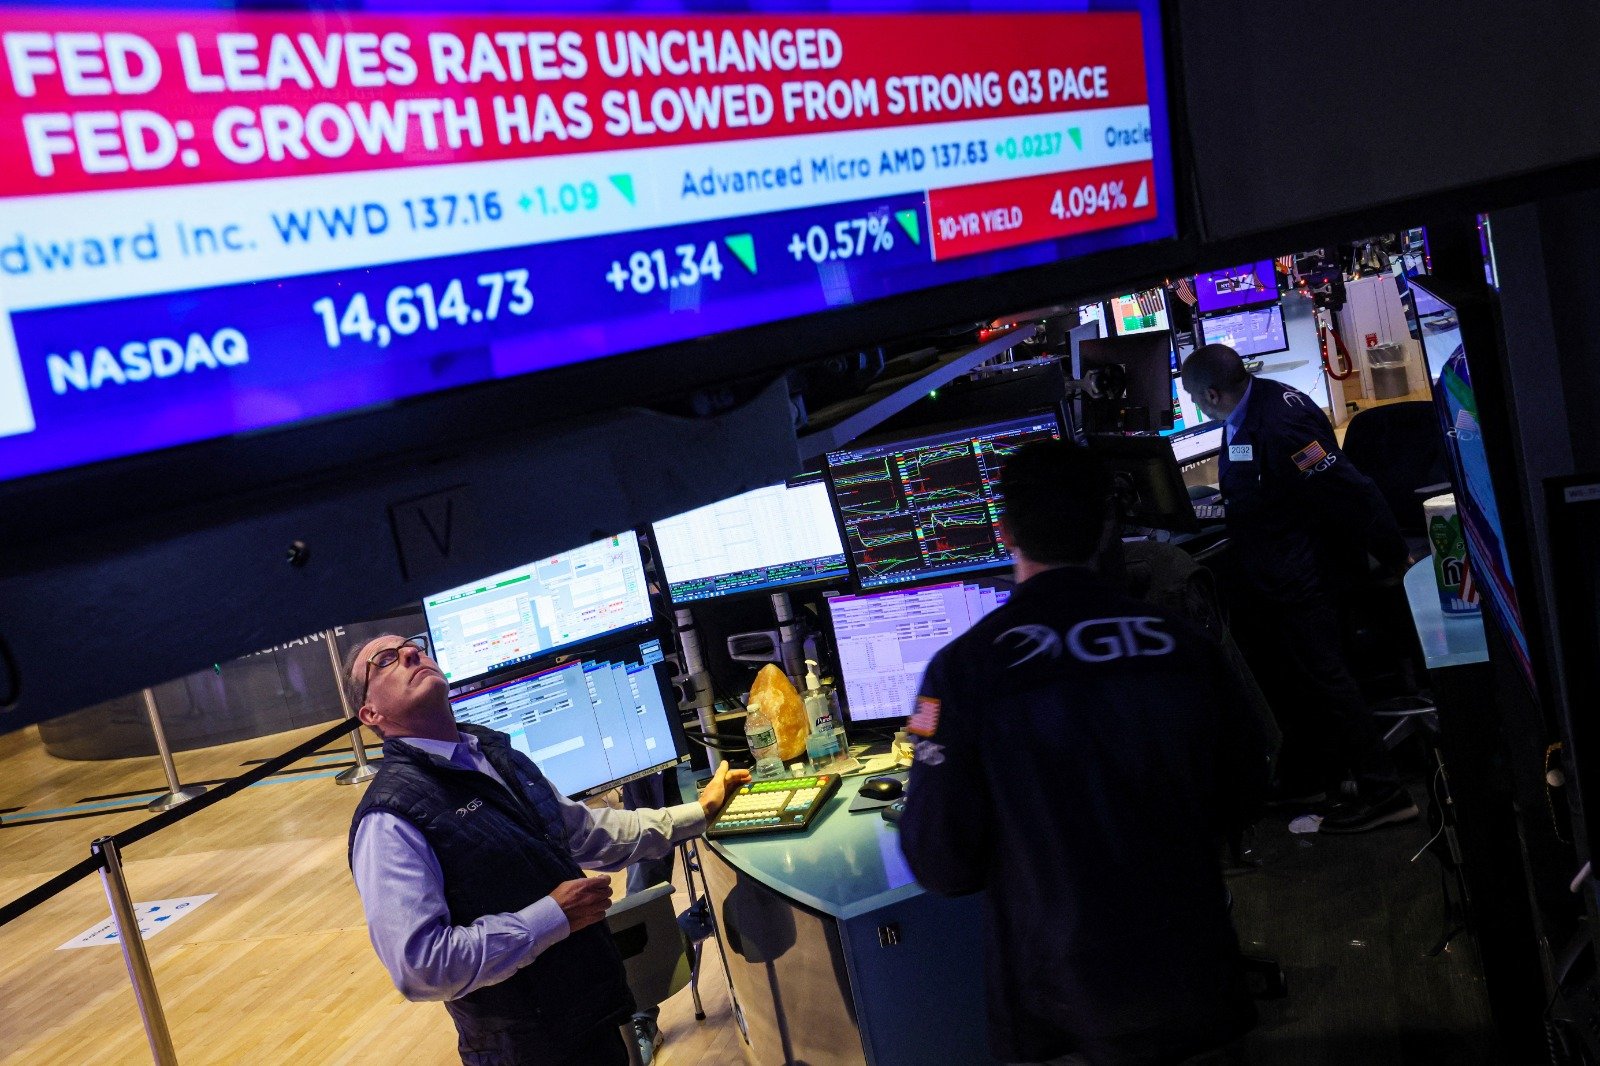 美国纽约证券交易所 (NYSE) 的萤幕上显示美联储最新的利率公告。美国股市三大指数在美联储发表声明后快速拉升，并在鲍威尔讲话时继续上扬。（图取自路透社）